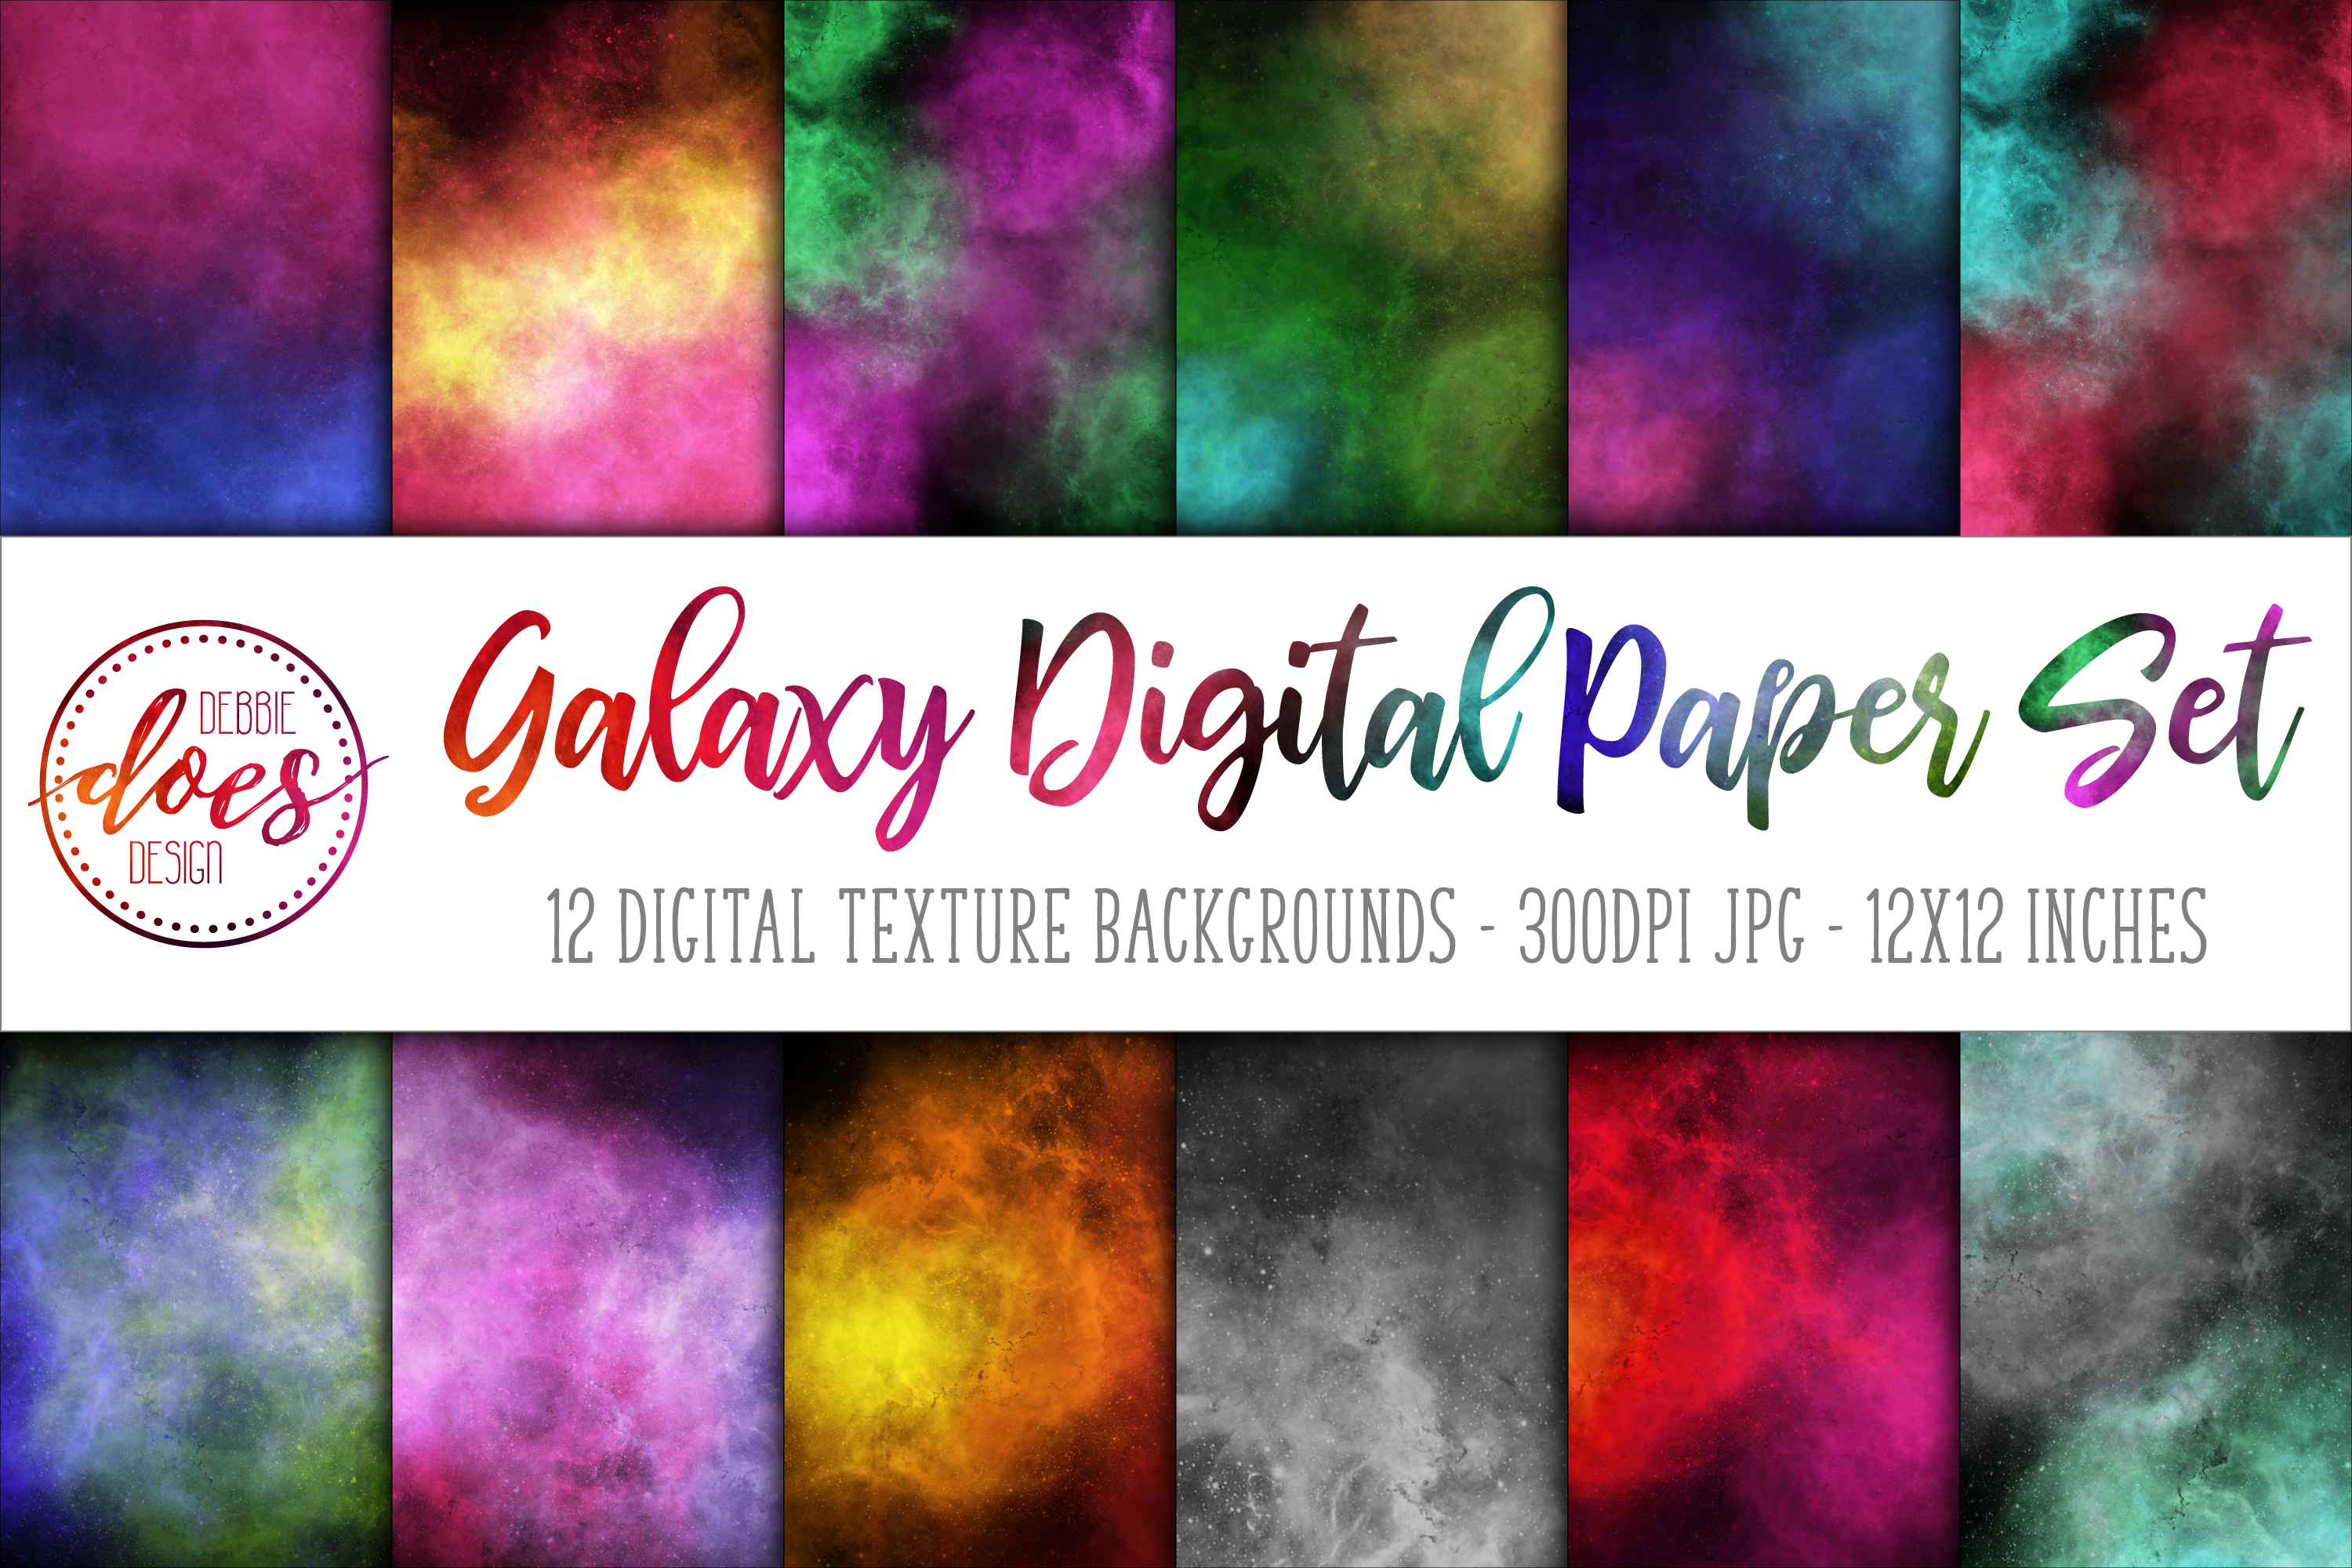 Galaxy Digital Paper/Texture Set - Design Elements